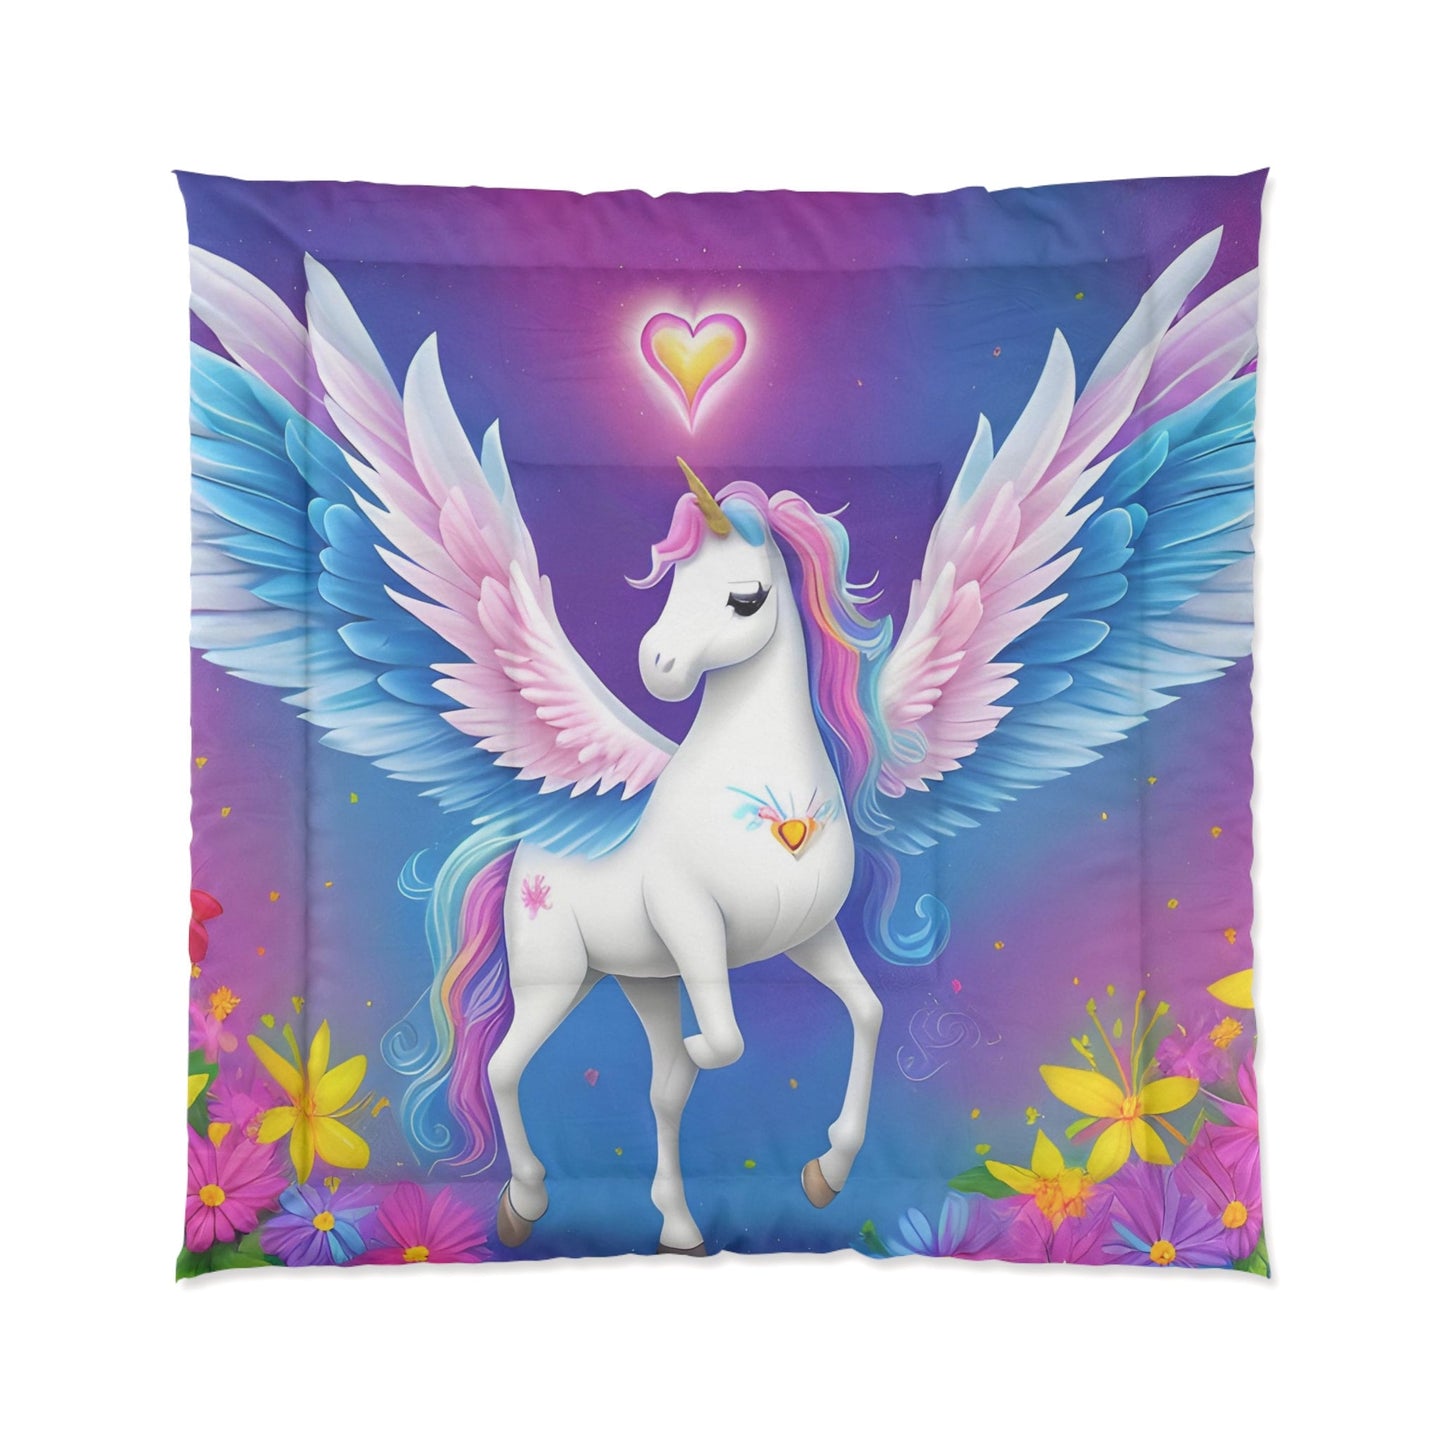 Unicorn Comforter or Duvet Cover girls bedding unicorns bedding rainbow comforter girly duvet heart flowers comforter